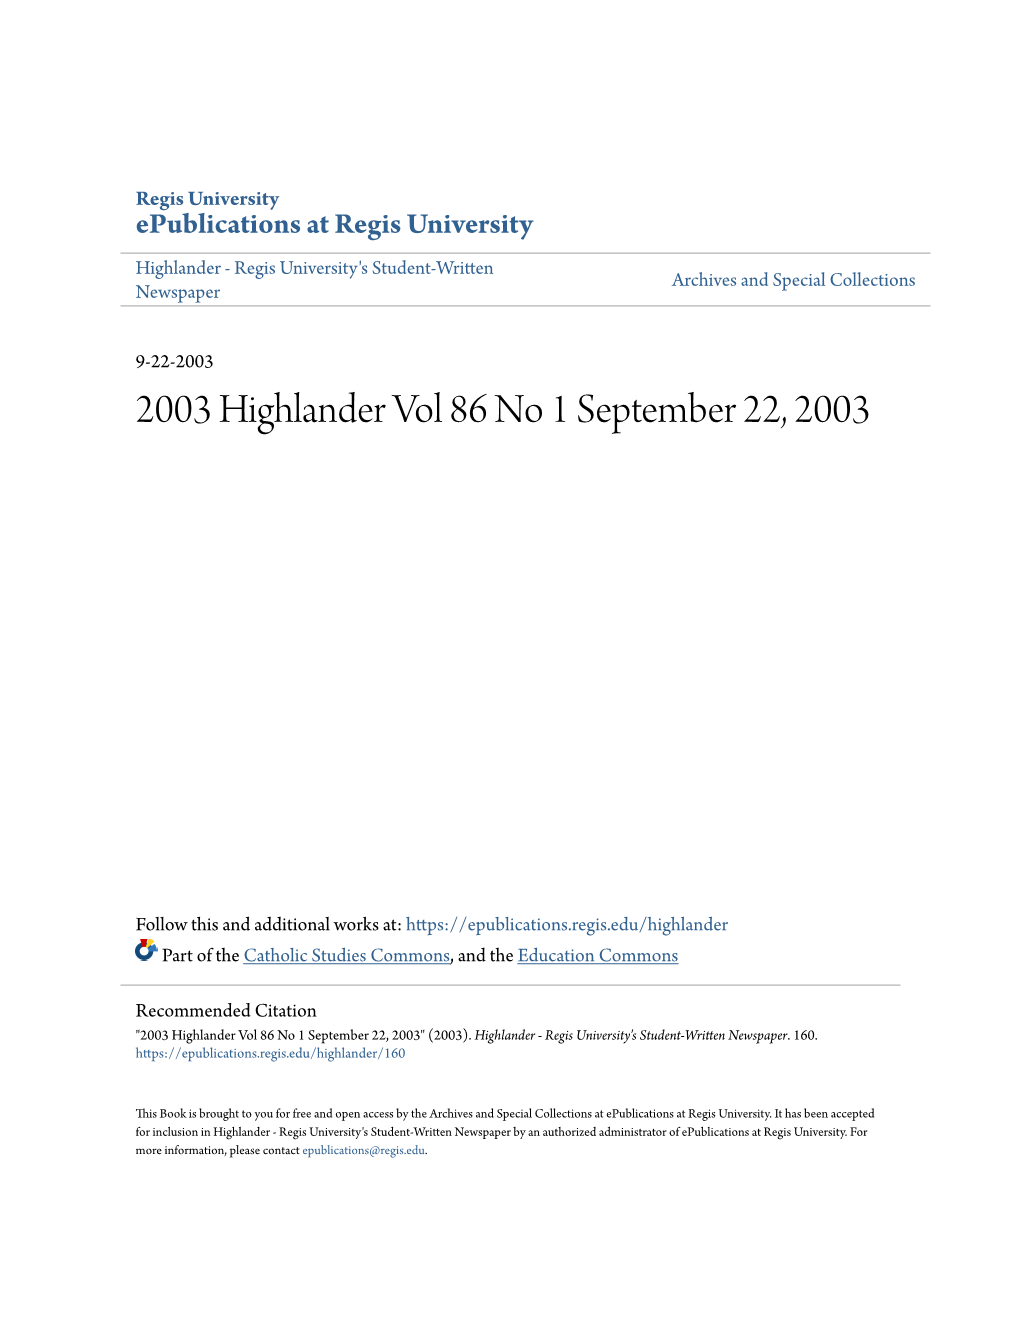 2003 Highlander Vol 86 No 1 September 22, 2003